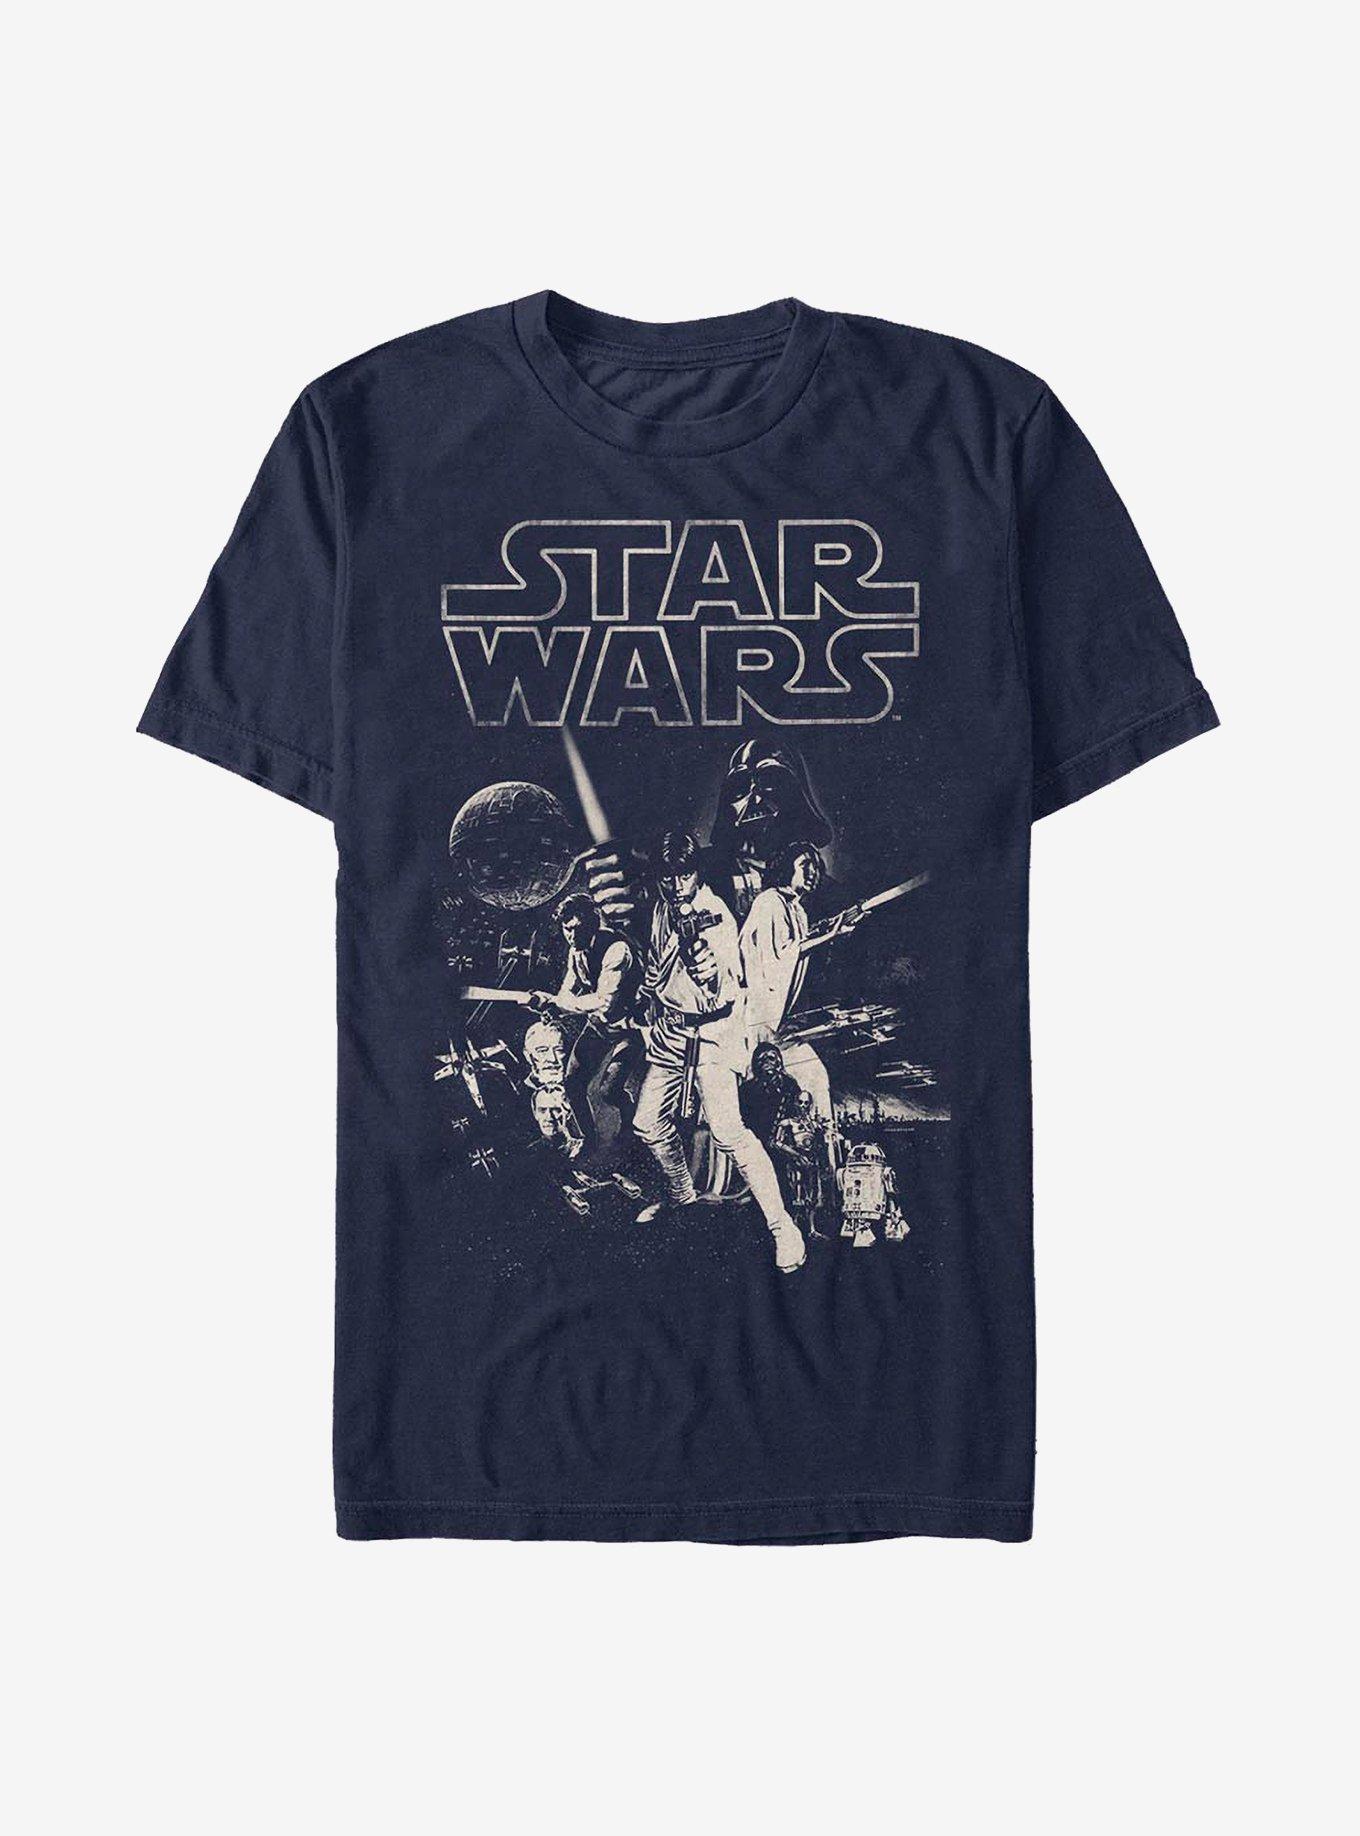 Star Wars Poster T-Shirt, NAVY, hi-res